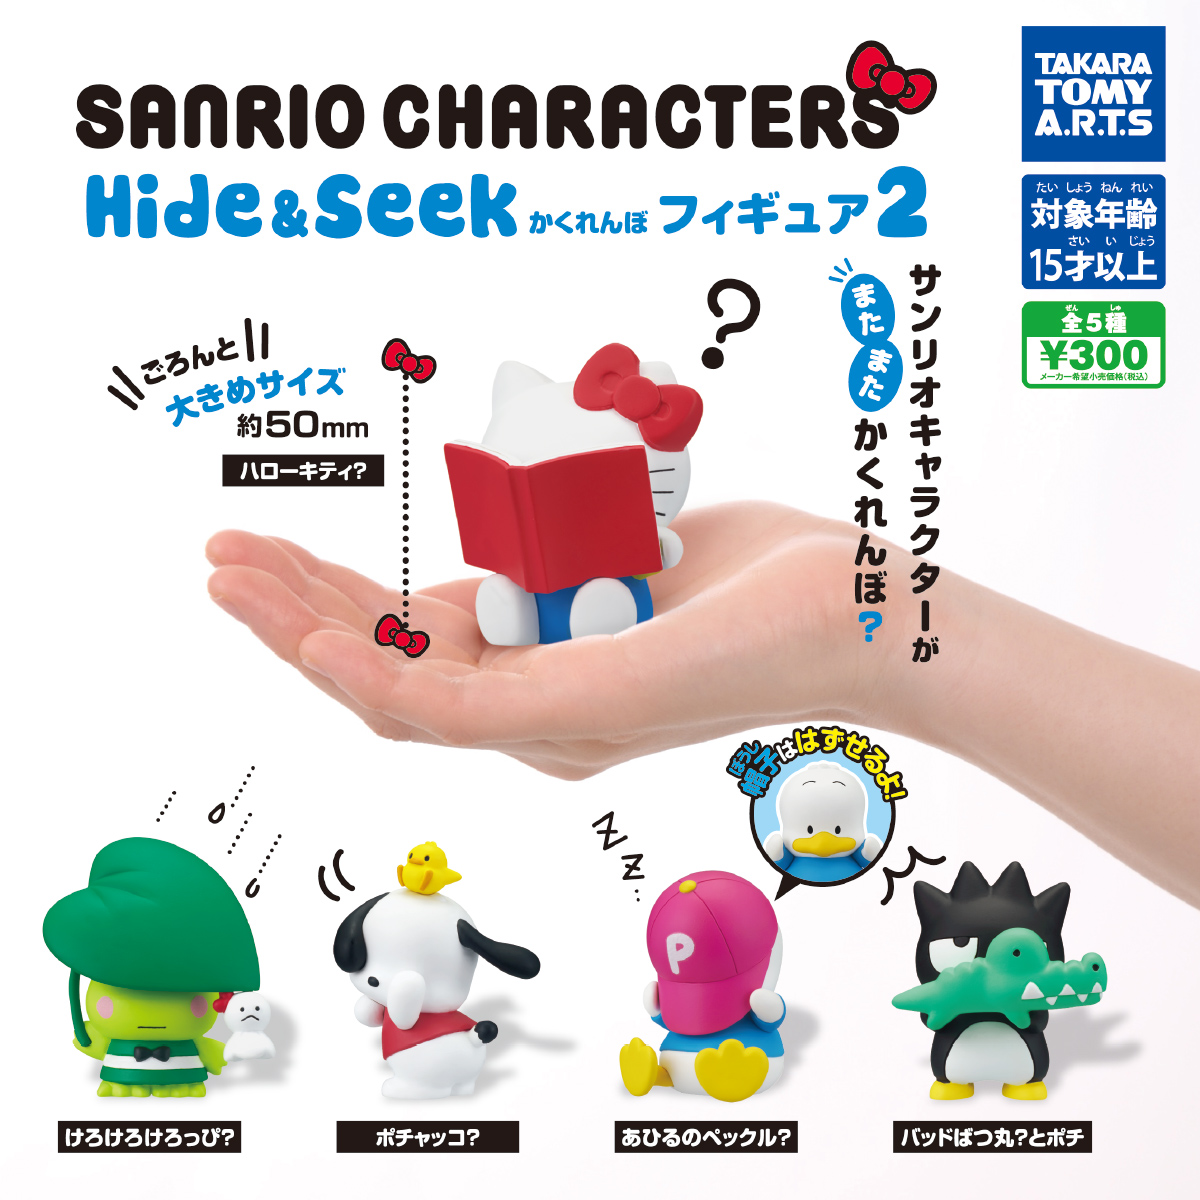 サンリオキャラクターズ Hide Seek かくれんぼフィギュア2 商品情報 タカラトミーアーツ